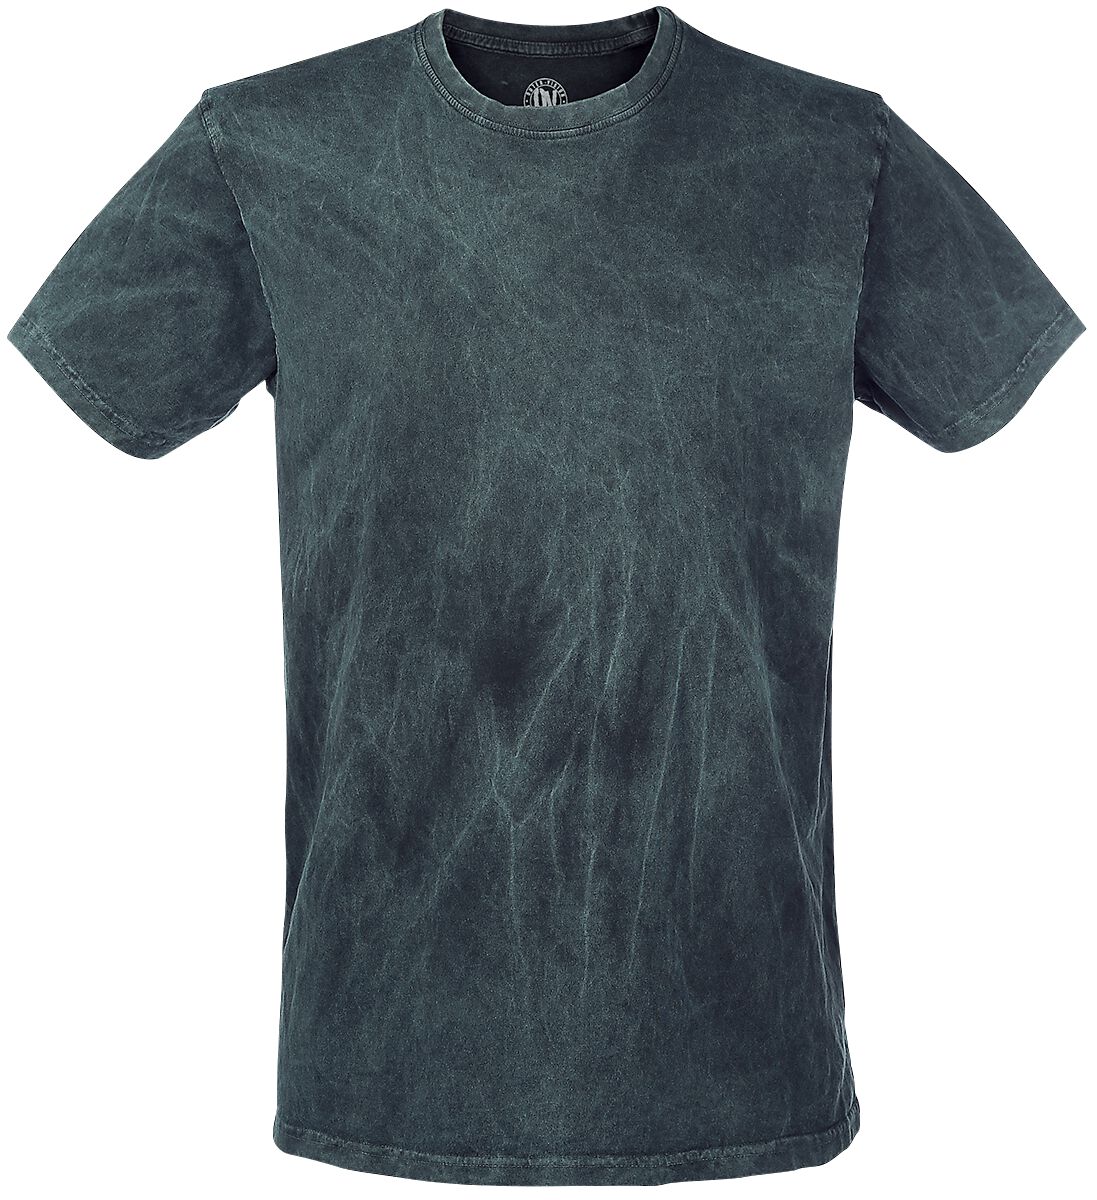 Outer Vision T-Shirt - Vintage - S bis XXL - für Männer - Größe L - petrol